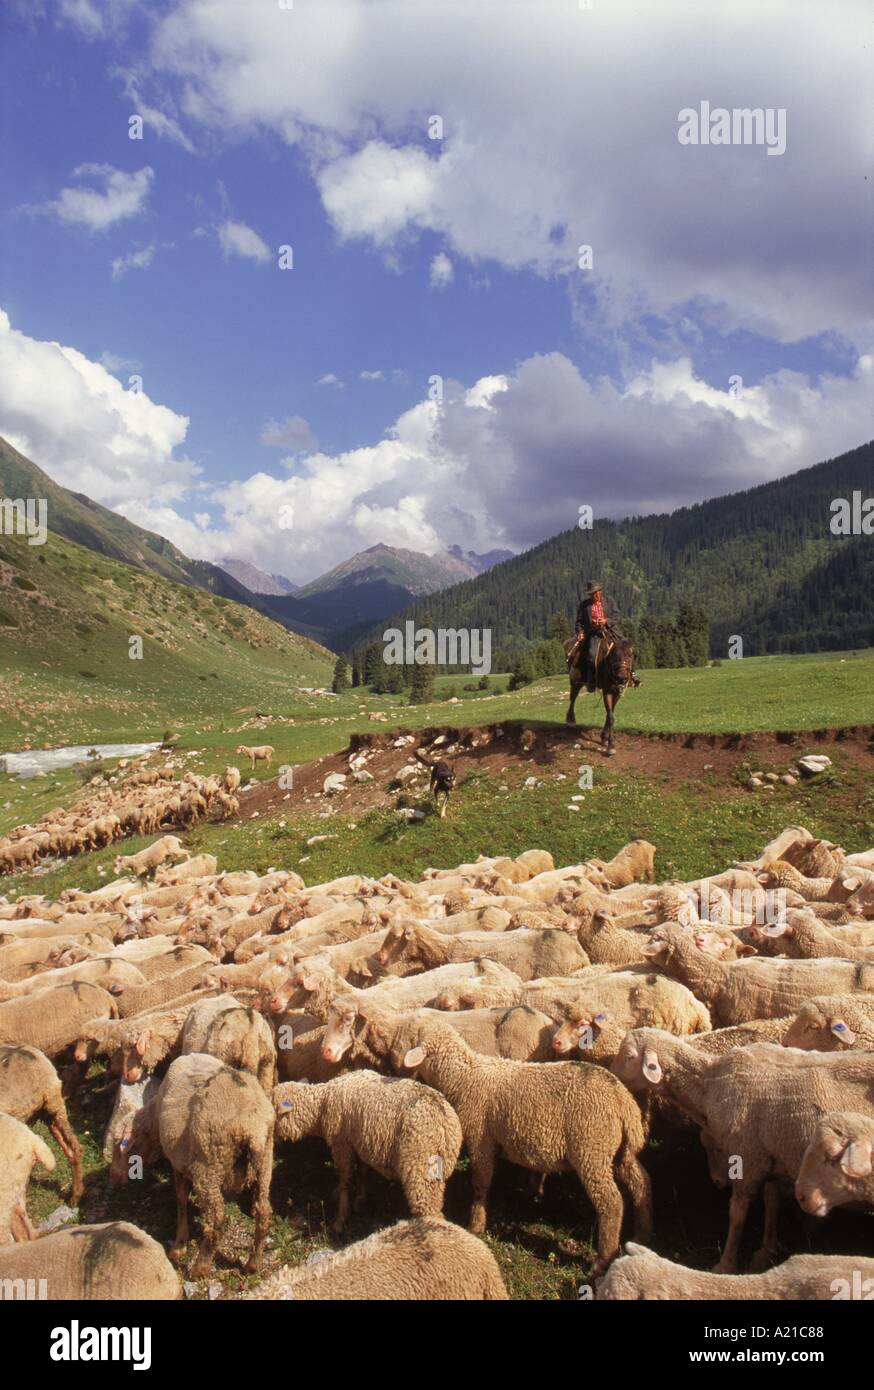 Hirte auf Pferd mit einem Hund und Herde von Schafen Post Dzhety Oguz in der Nähe von Kara Kol in Kirgisistan Zentralasien J Strachan Stockfoto